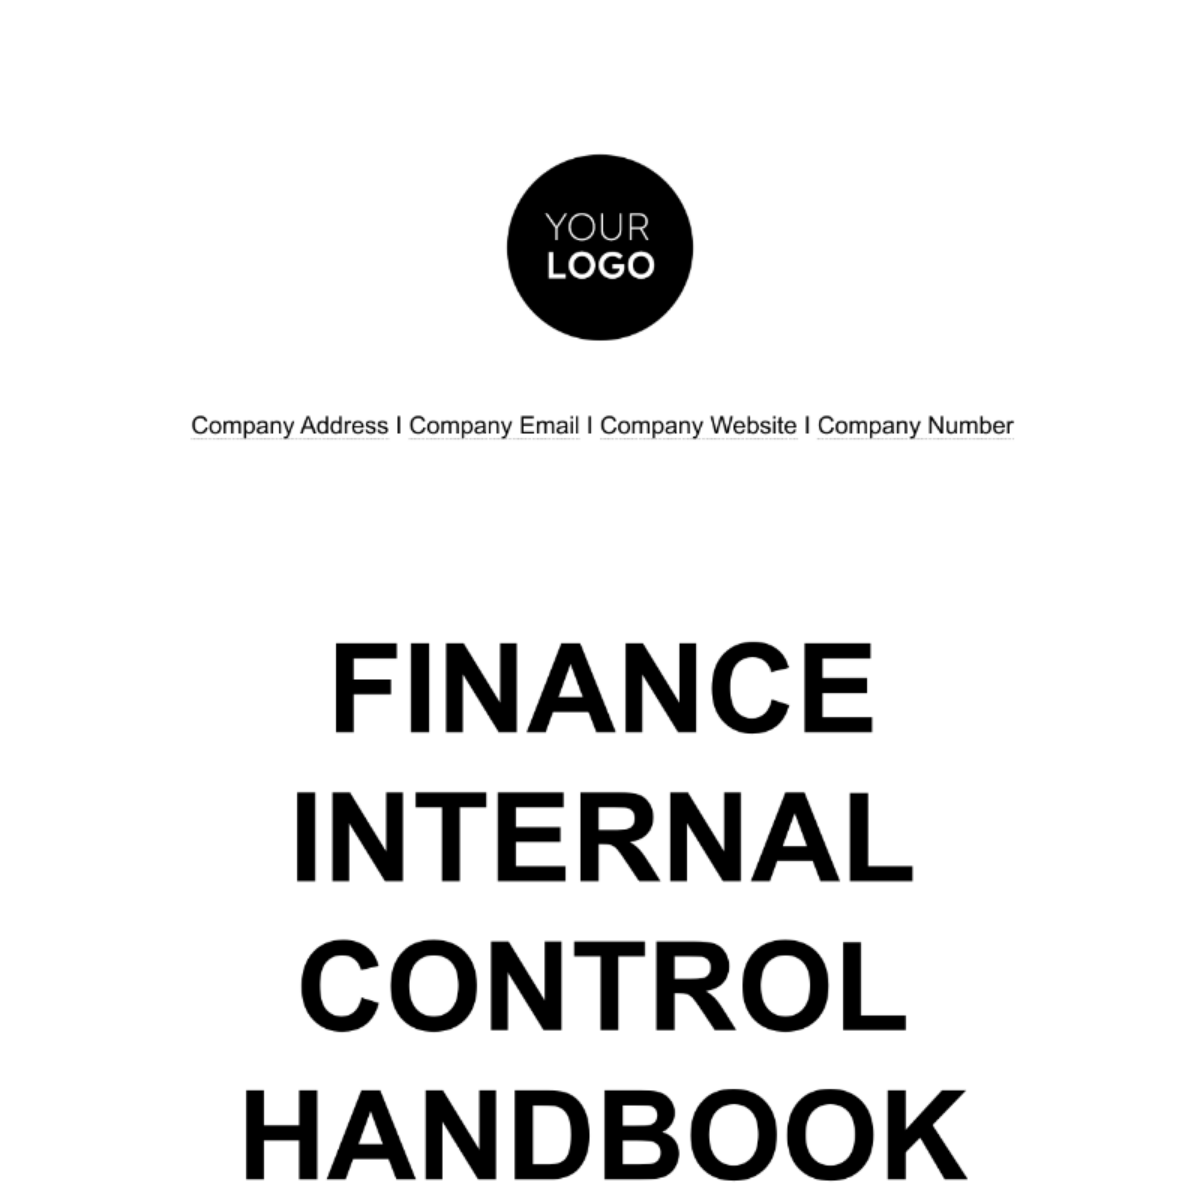 Free Finance Internal Control Handbook Template